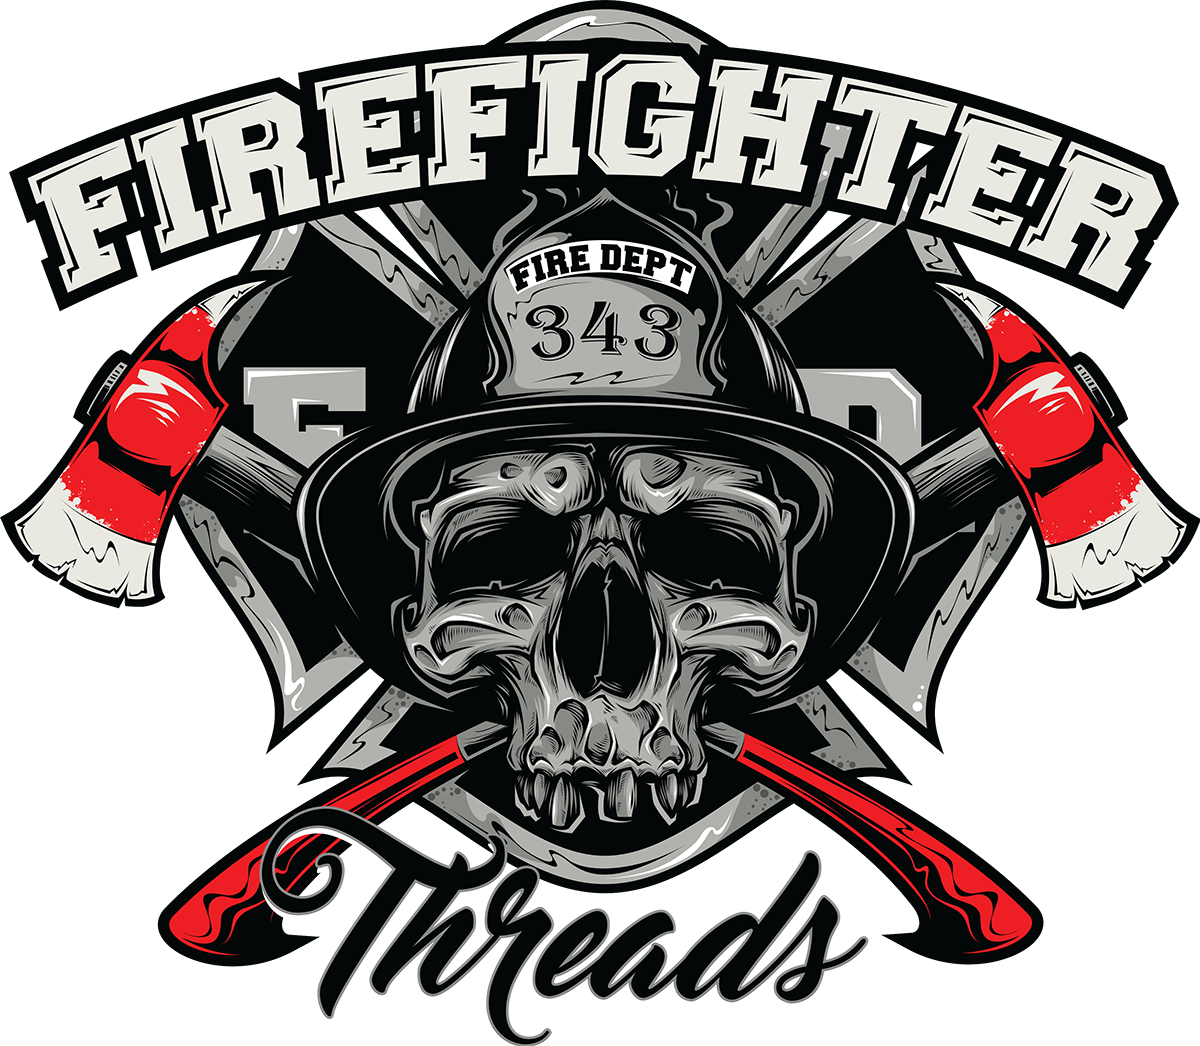 Firefighter Threads